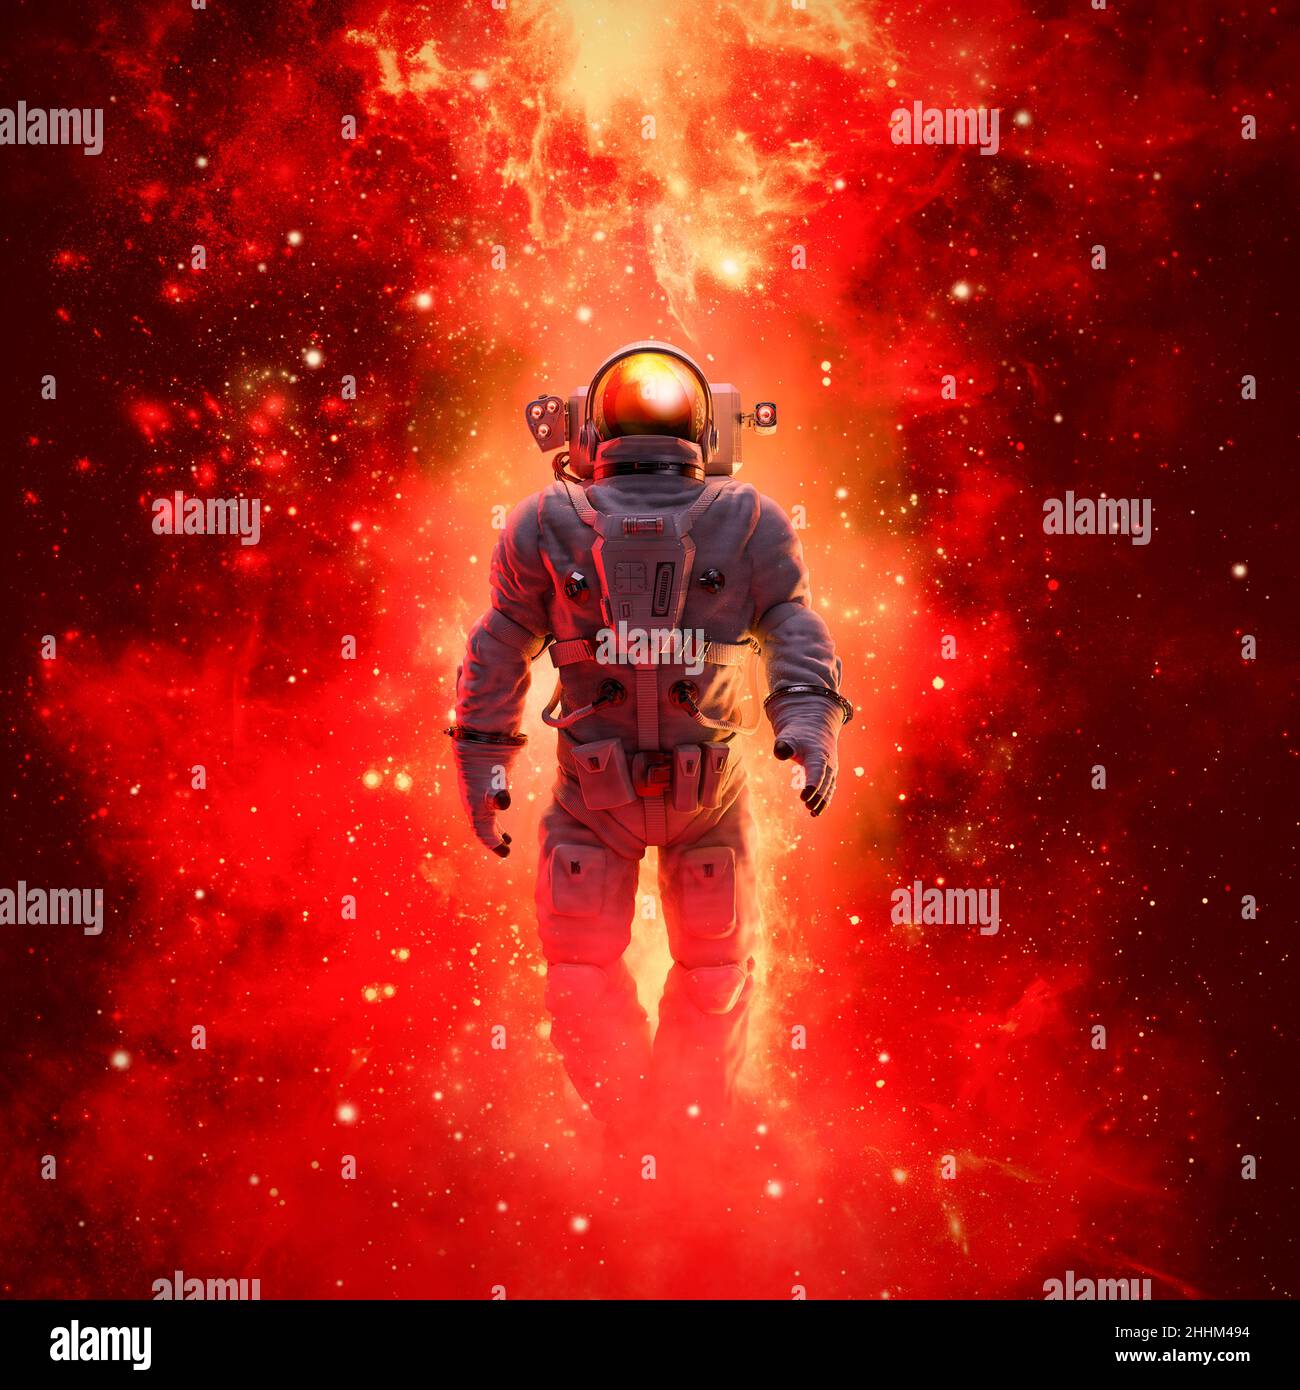 Esplorazione di una galassia di stelle - 3D illustrazione della scena di fantascienza con astronauta che cammina nello spazio esterno in mezzo a galassie colorate incandescenti Foto Stock